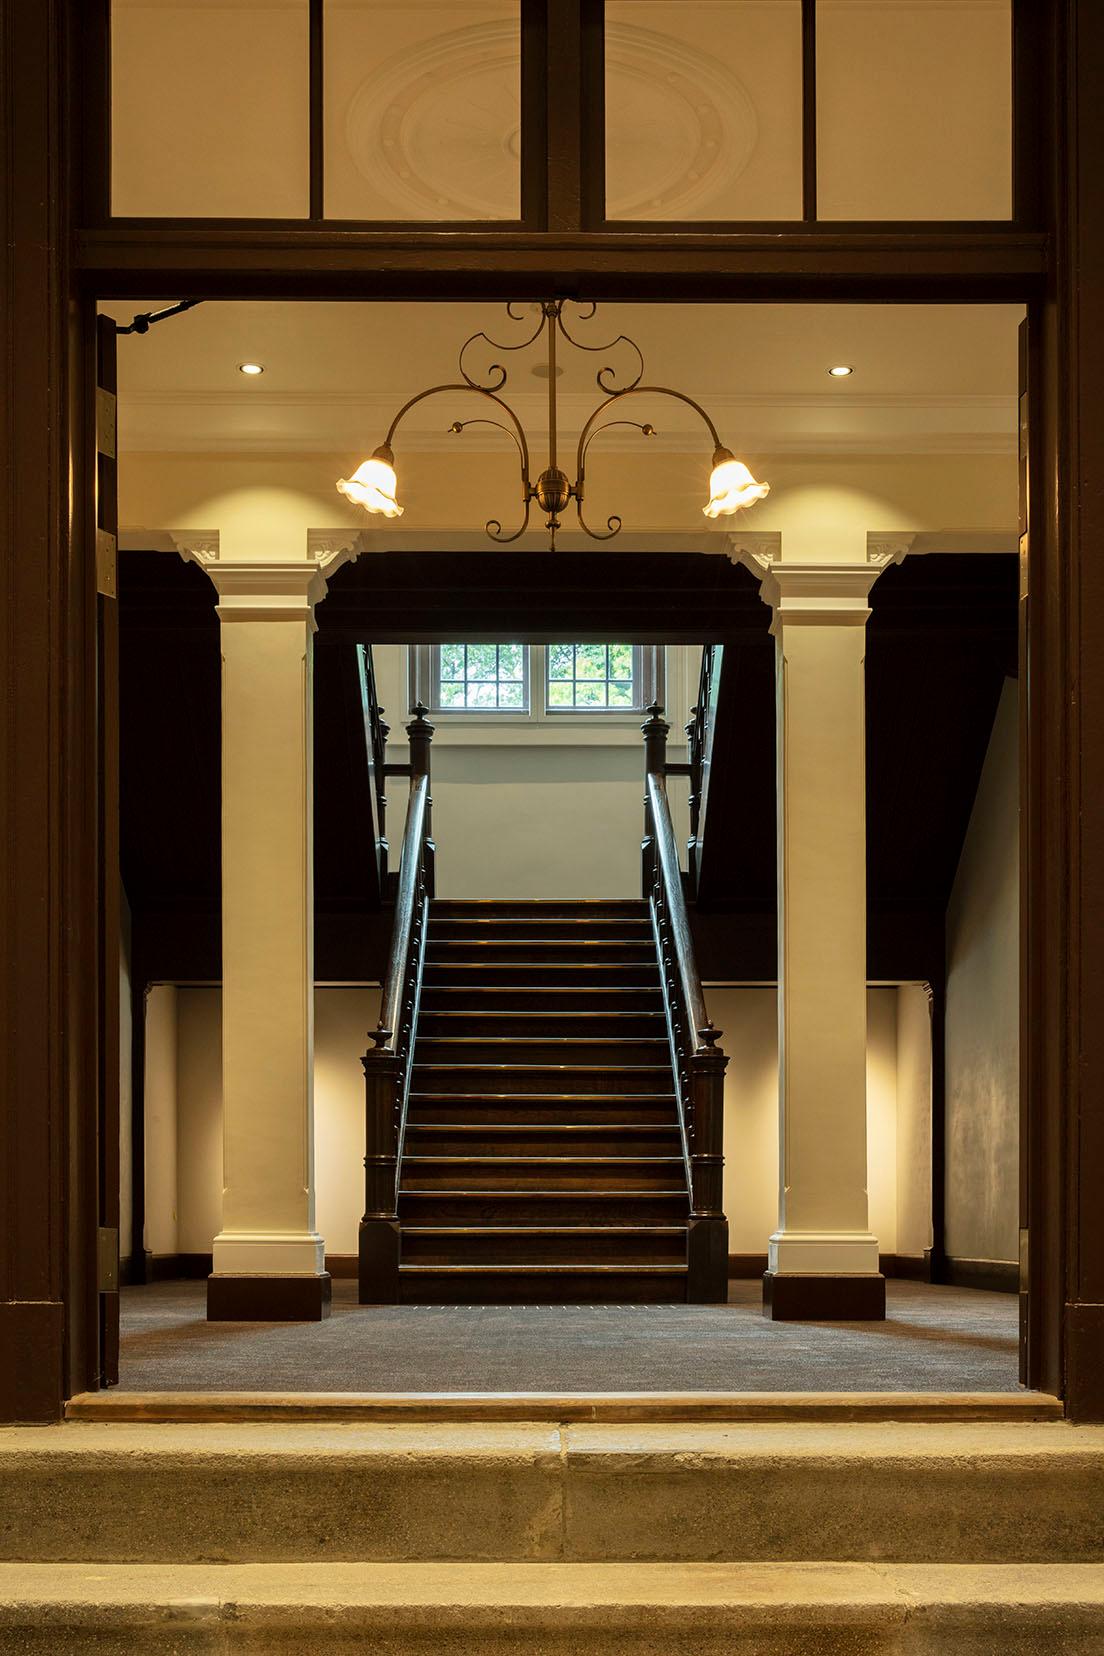 展示棟の中央にある階段室。柱頭や天井の装飾にも注目だ。